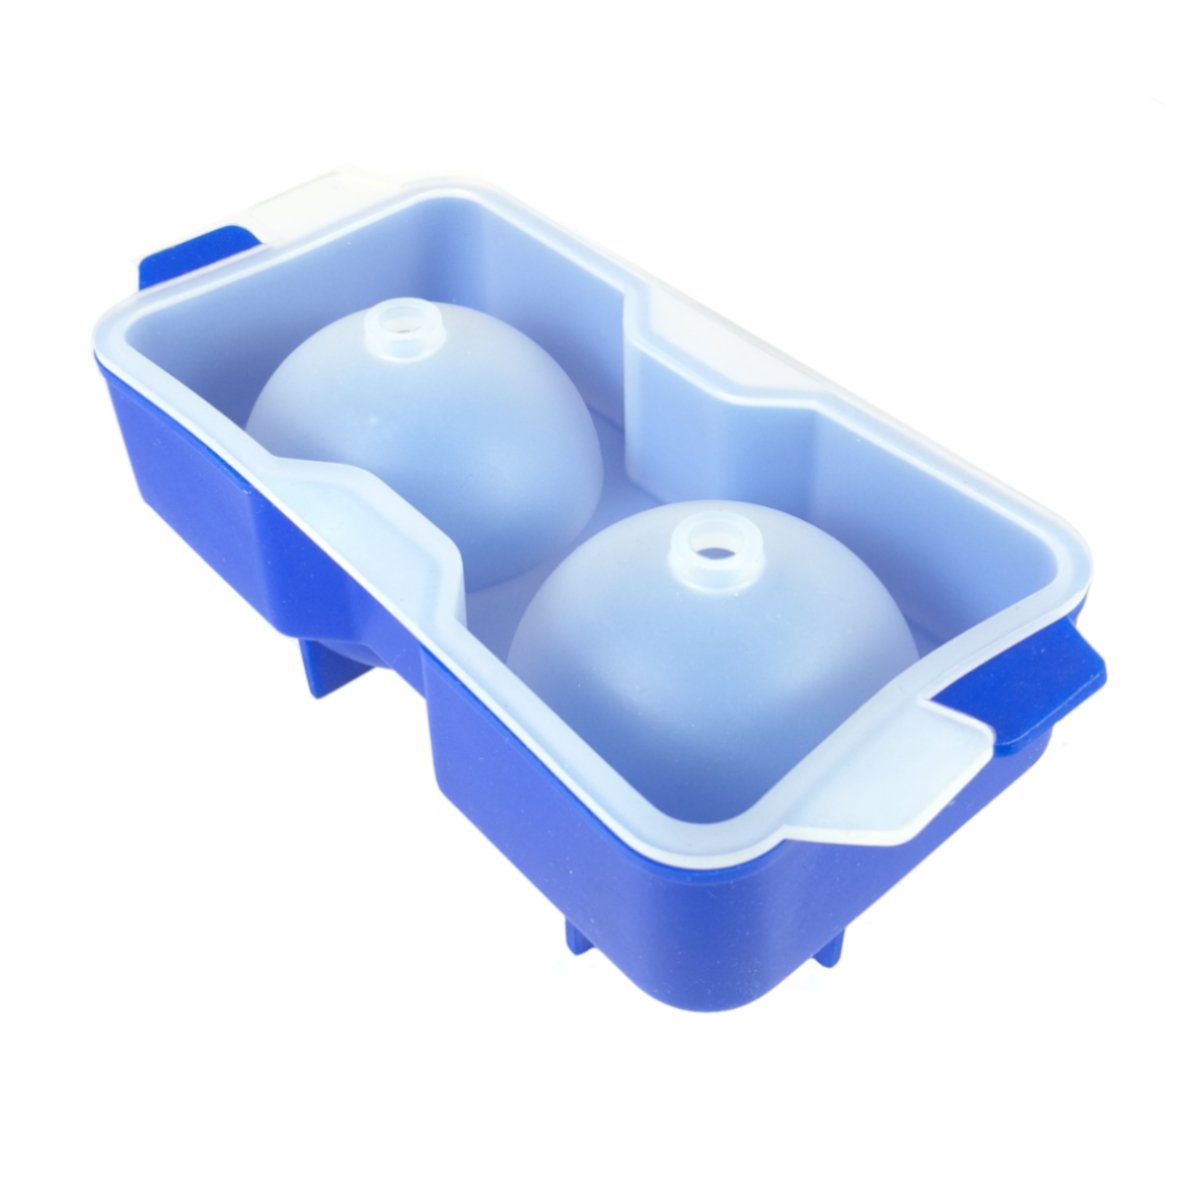 Forma Bola de Gelo em Silicone com 2 Espaços:Azul - 1